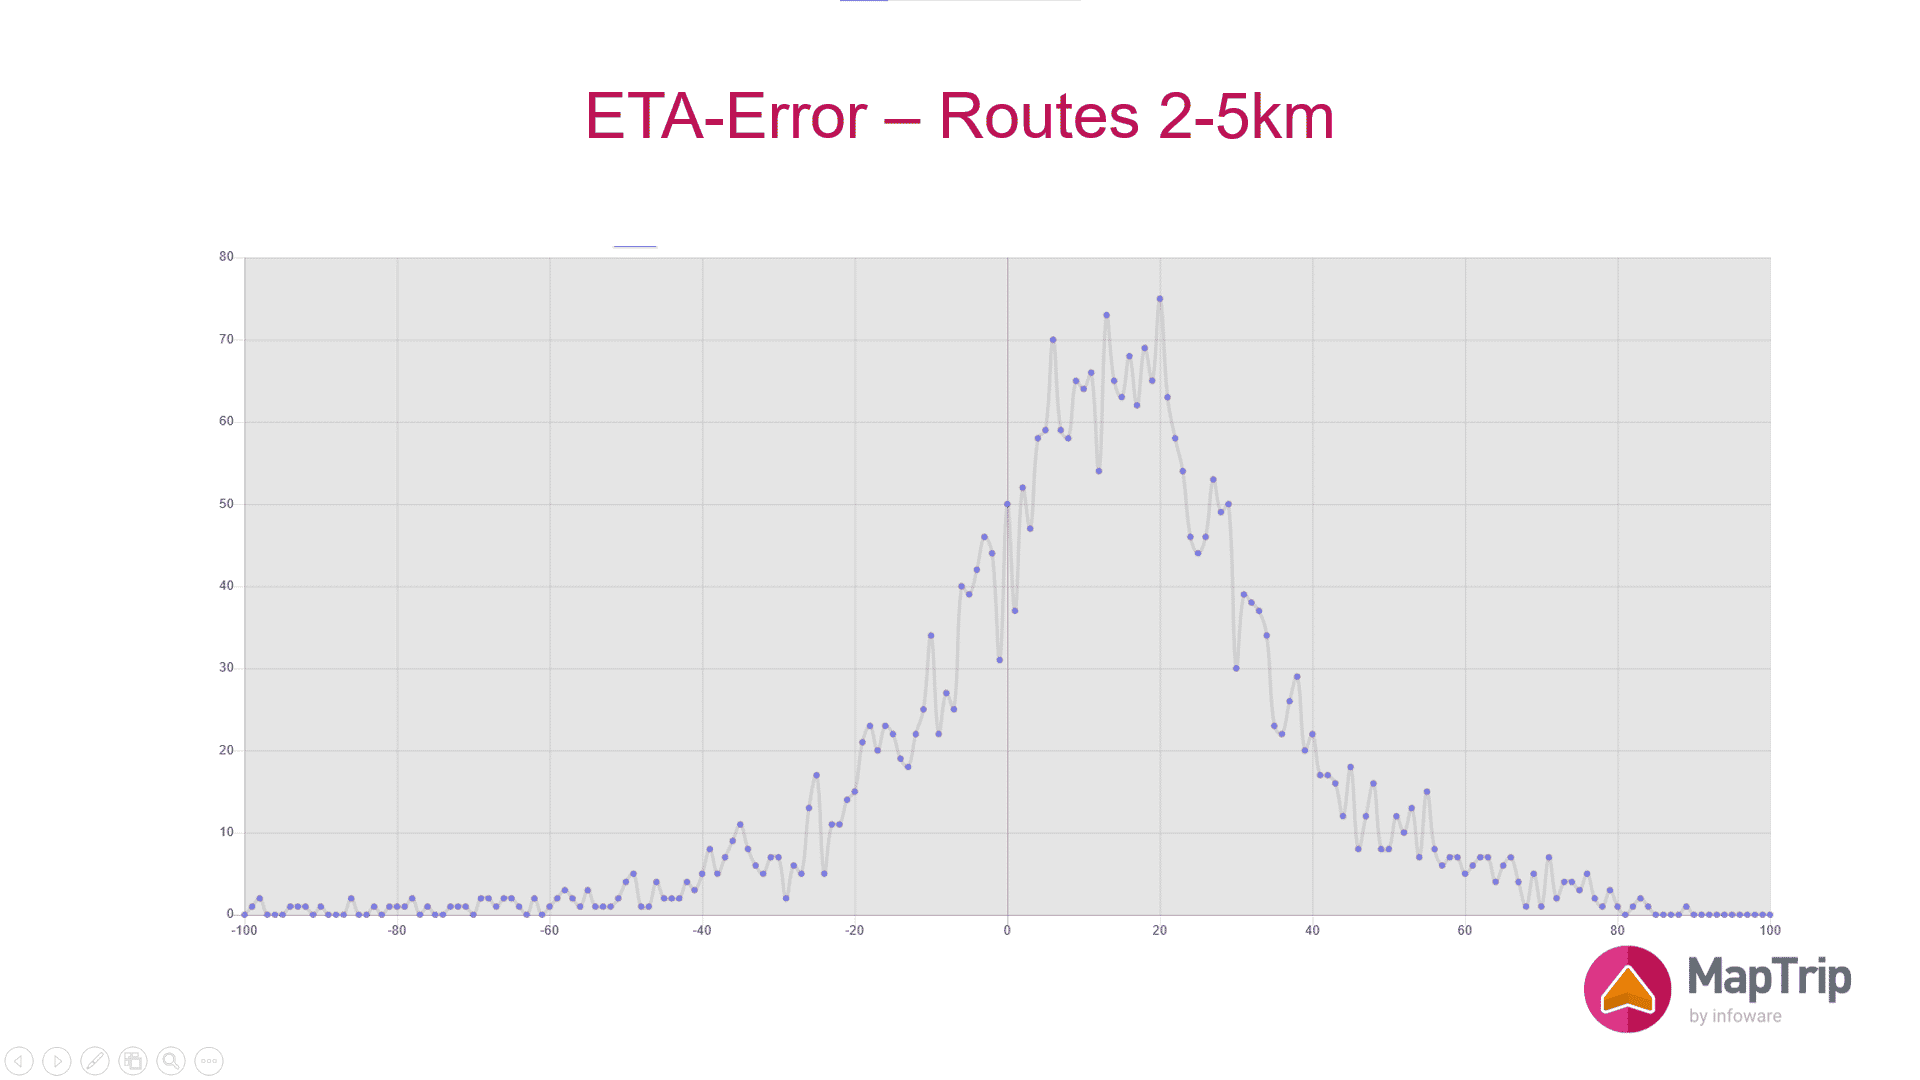 Häufigkeitsverteilung des relativen Fehlers bei der Fahrzeitberechnung für Routen der Länge 2km bis 5km